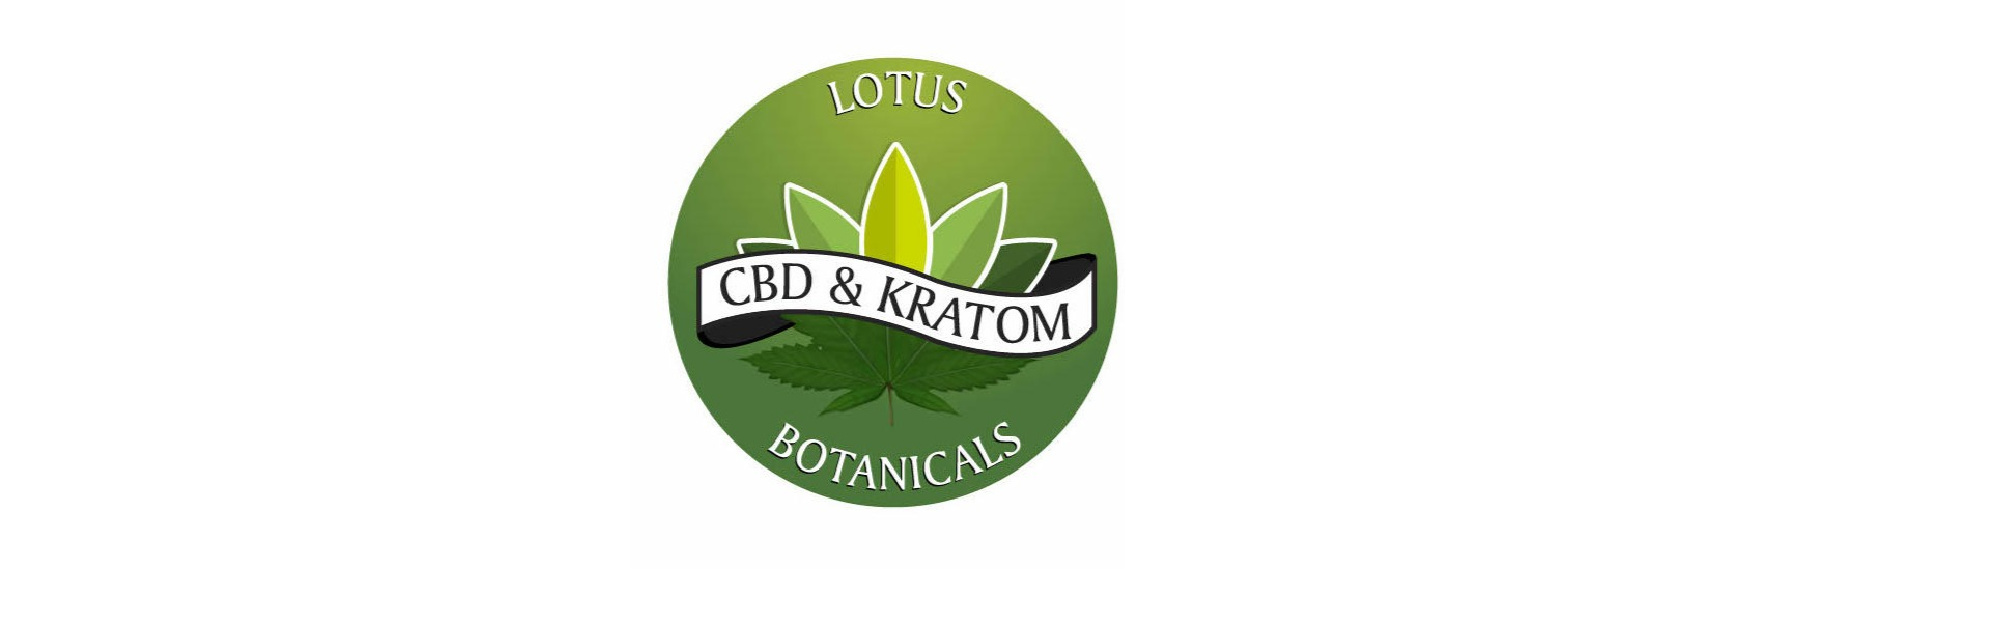 image of lotus botanicals cbd & kratom 